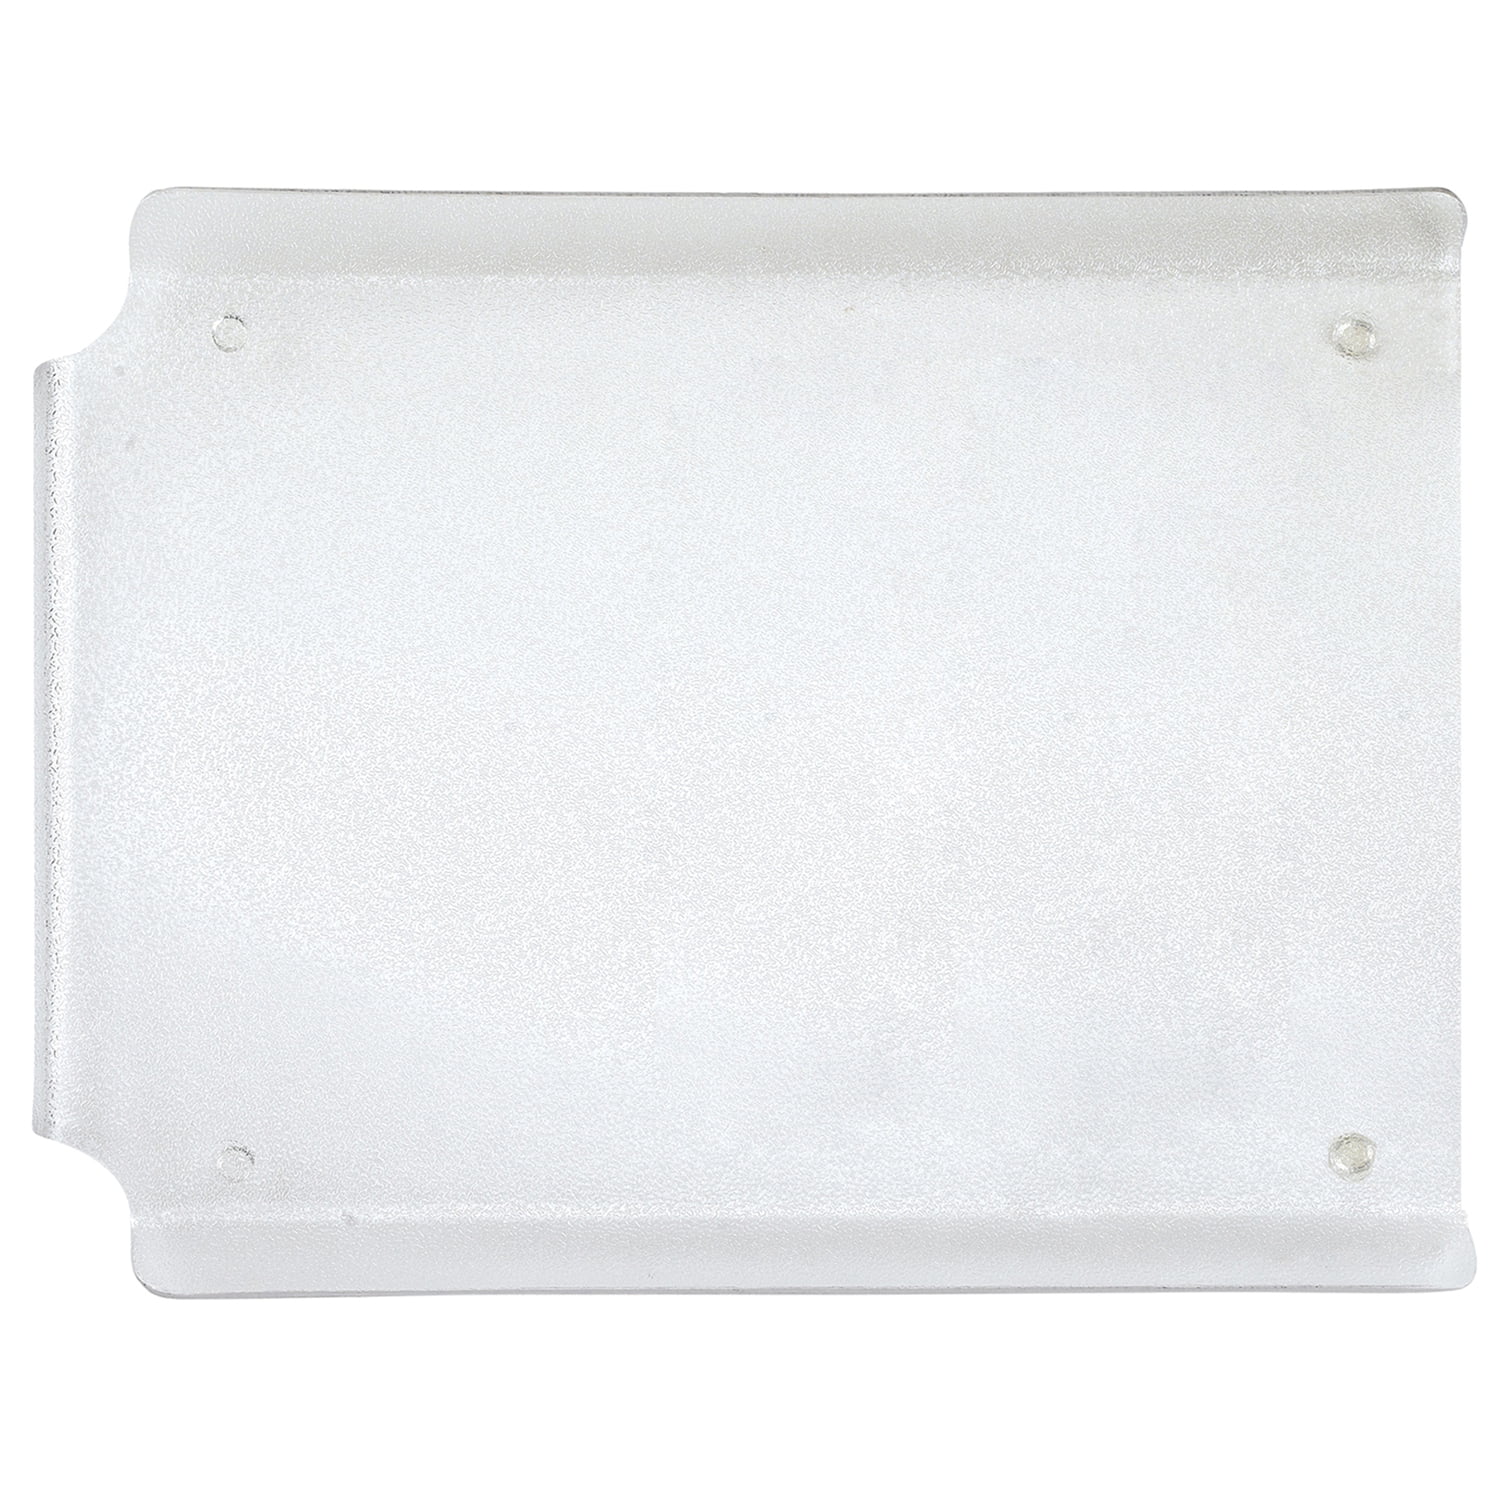 Better Houseware PE Plastic Dish Drain Board, Black (1480/E)